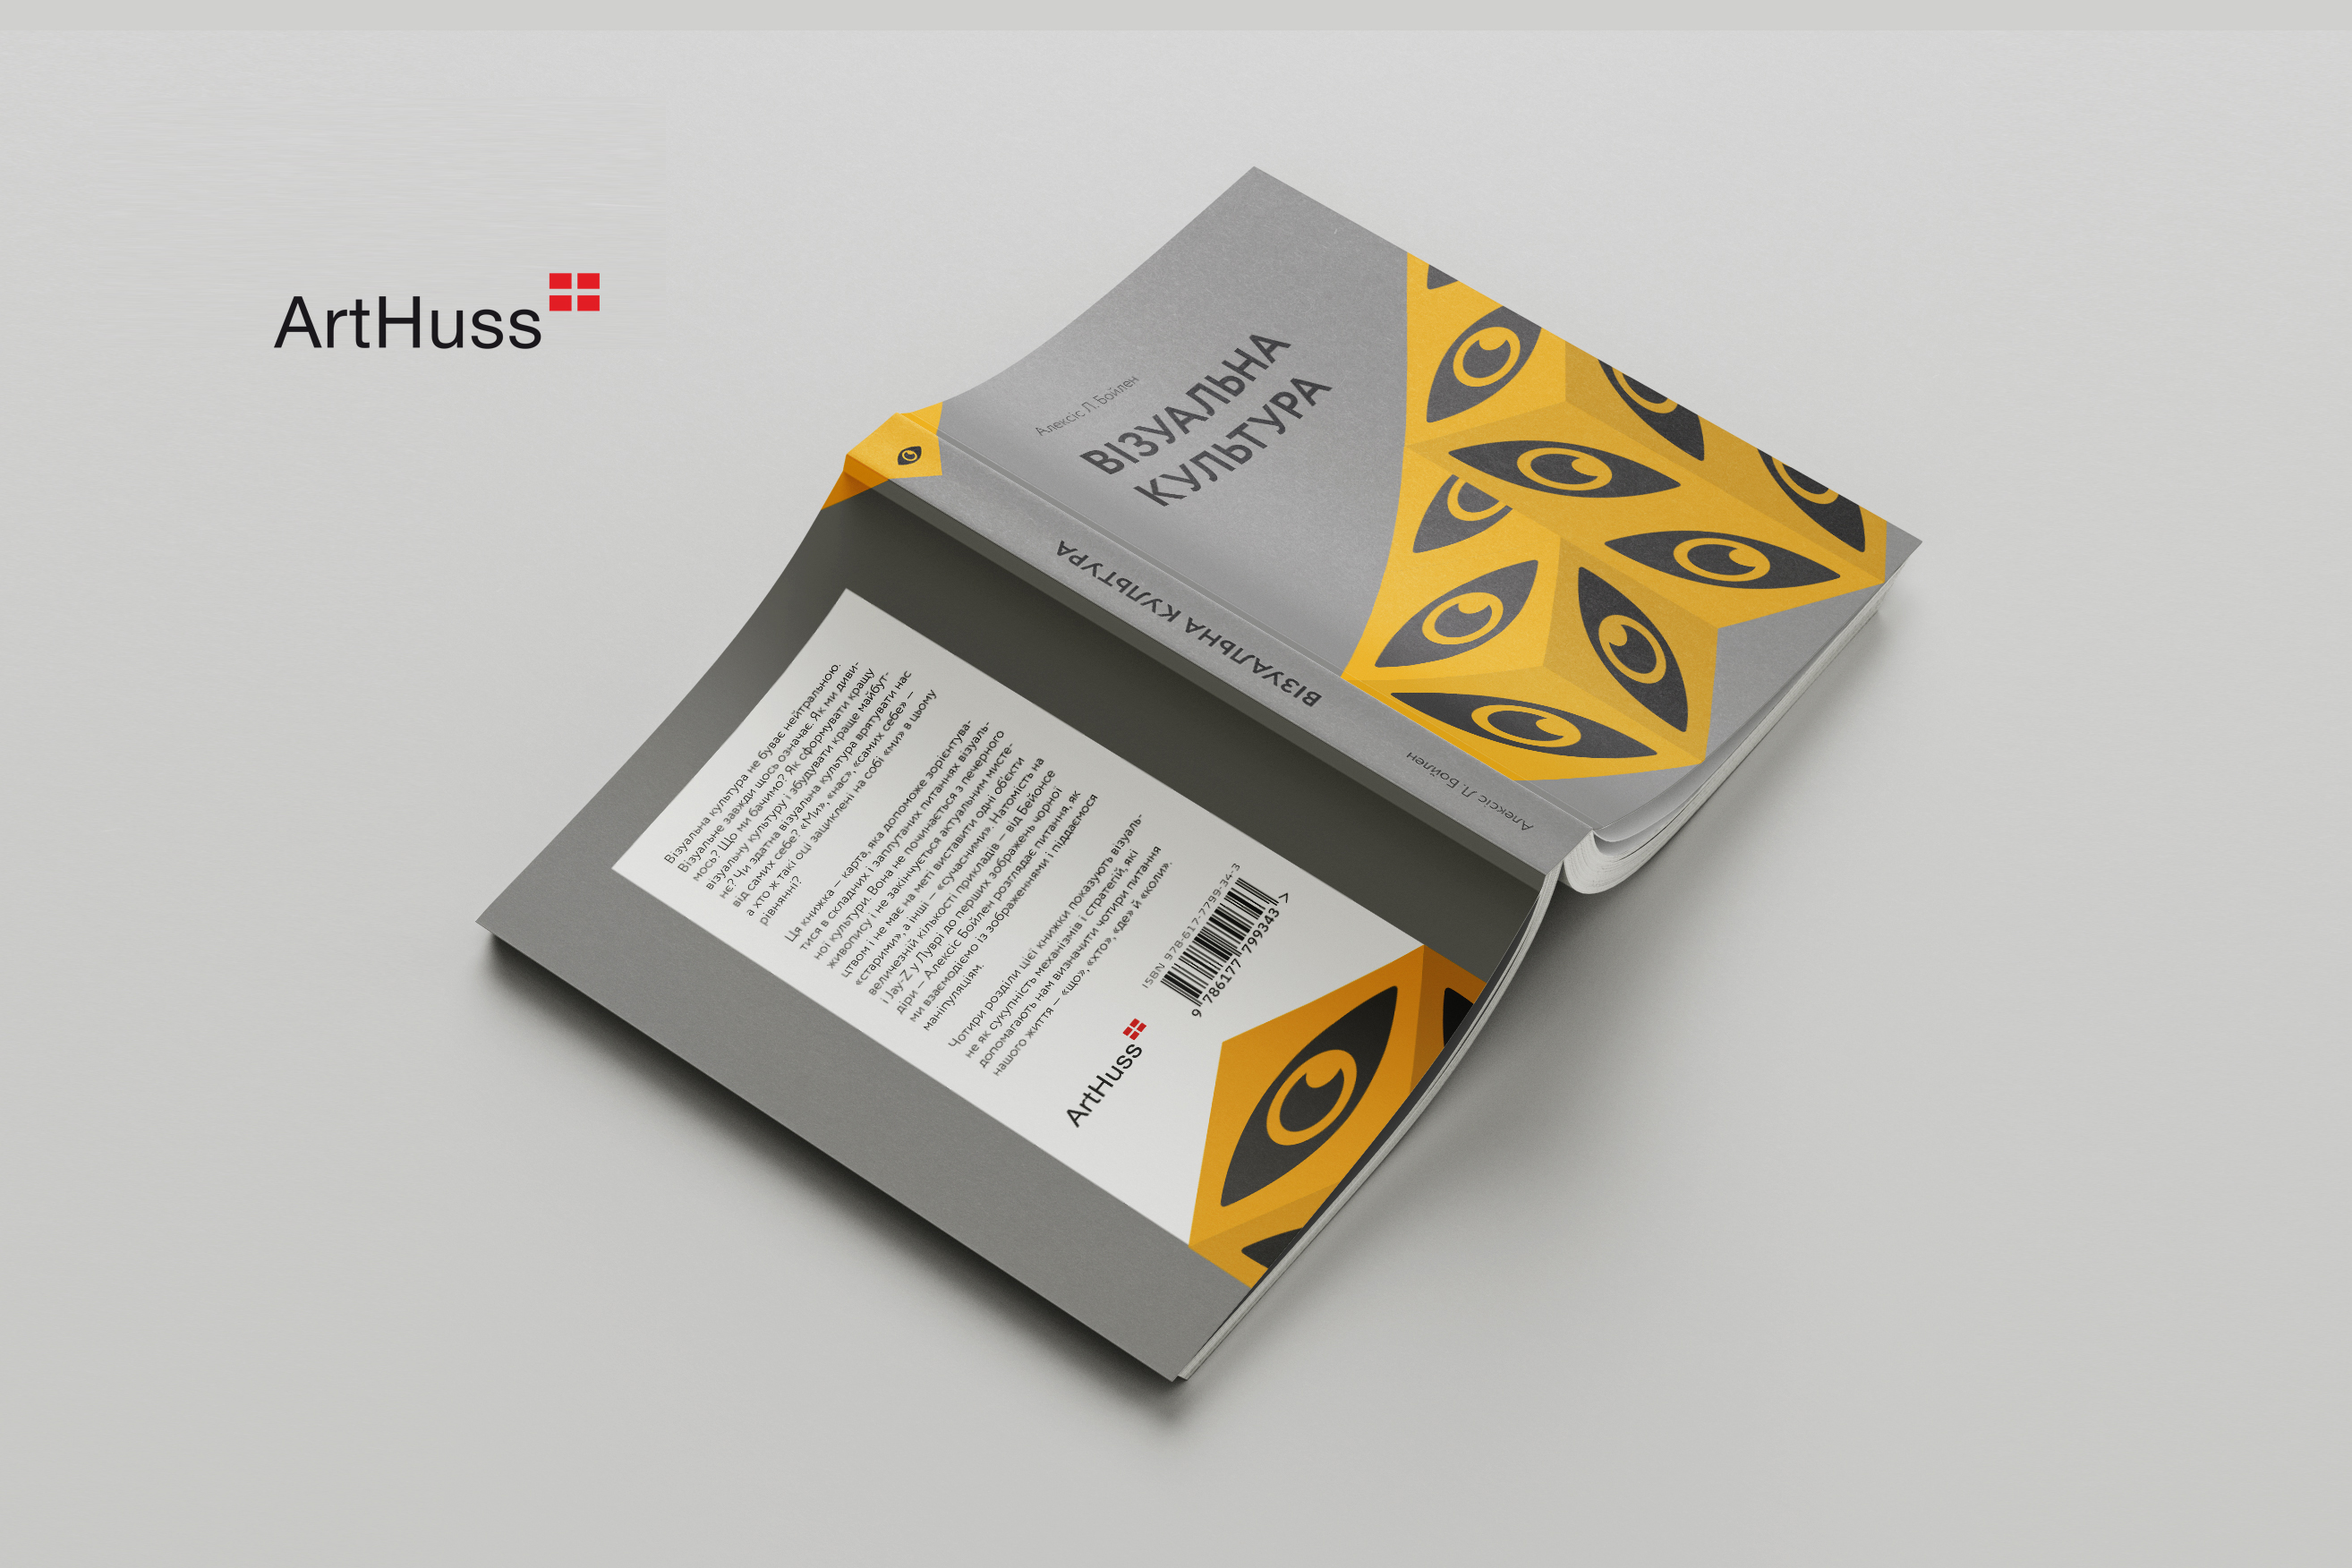 Нова книга видавництва ArtHuss про візуальне як сукупність механізмів і стратегій